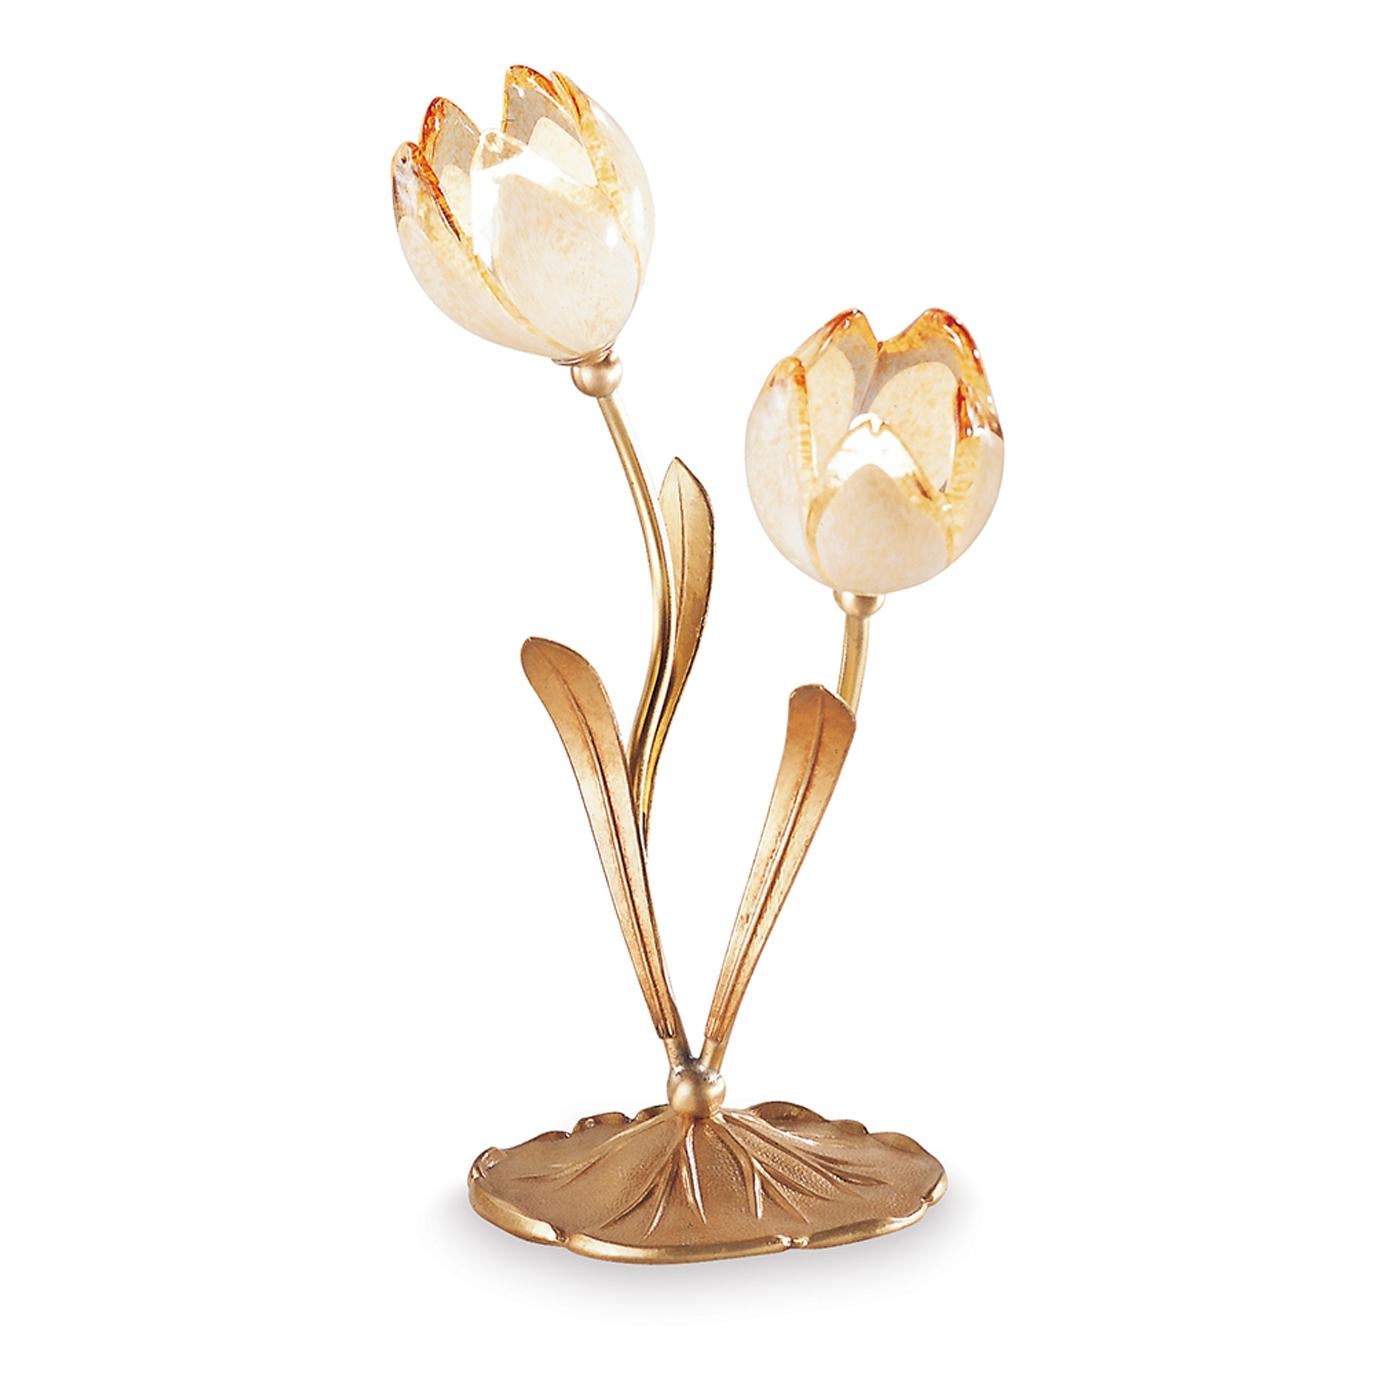 Romantique par sa silhouette recréant un couple de tulipes en fleurs, cette lampe à poser est une ode à la nature rehaussée par le luxe de finitions et de matériaux précieux. Les tiges feuillues s'étendent sinueusement de la base festonnée texturée